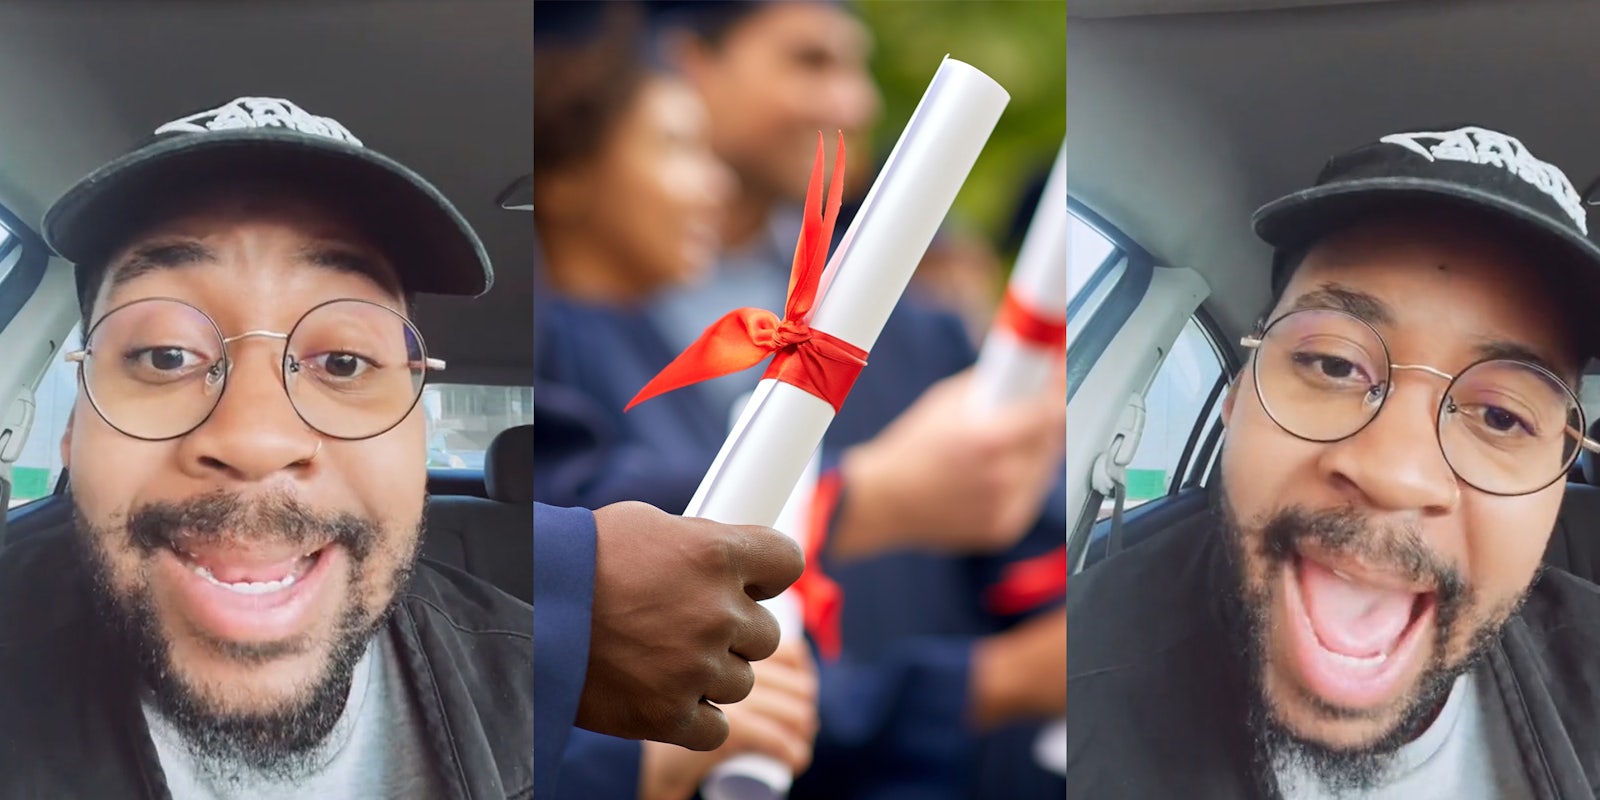 man speaking in car (l)man at graduation holding diploma (c) man speaking in car (r)